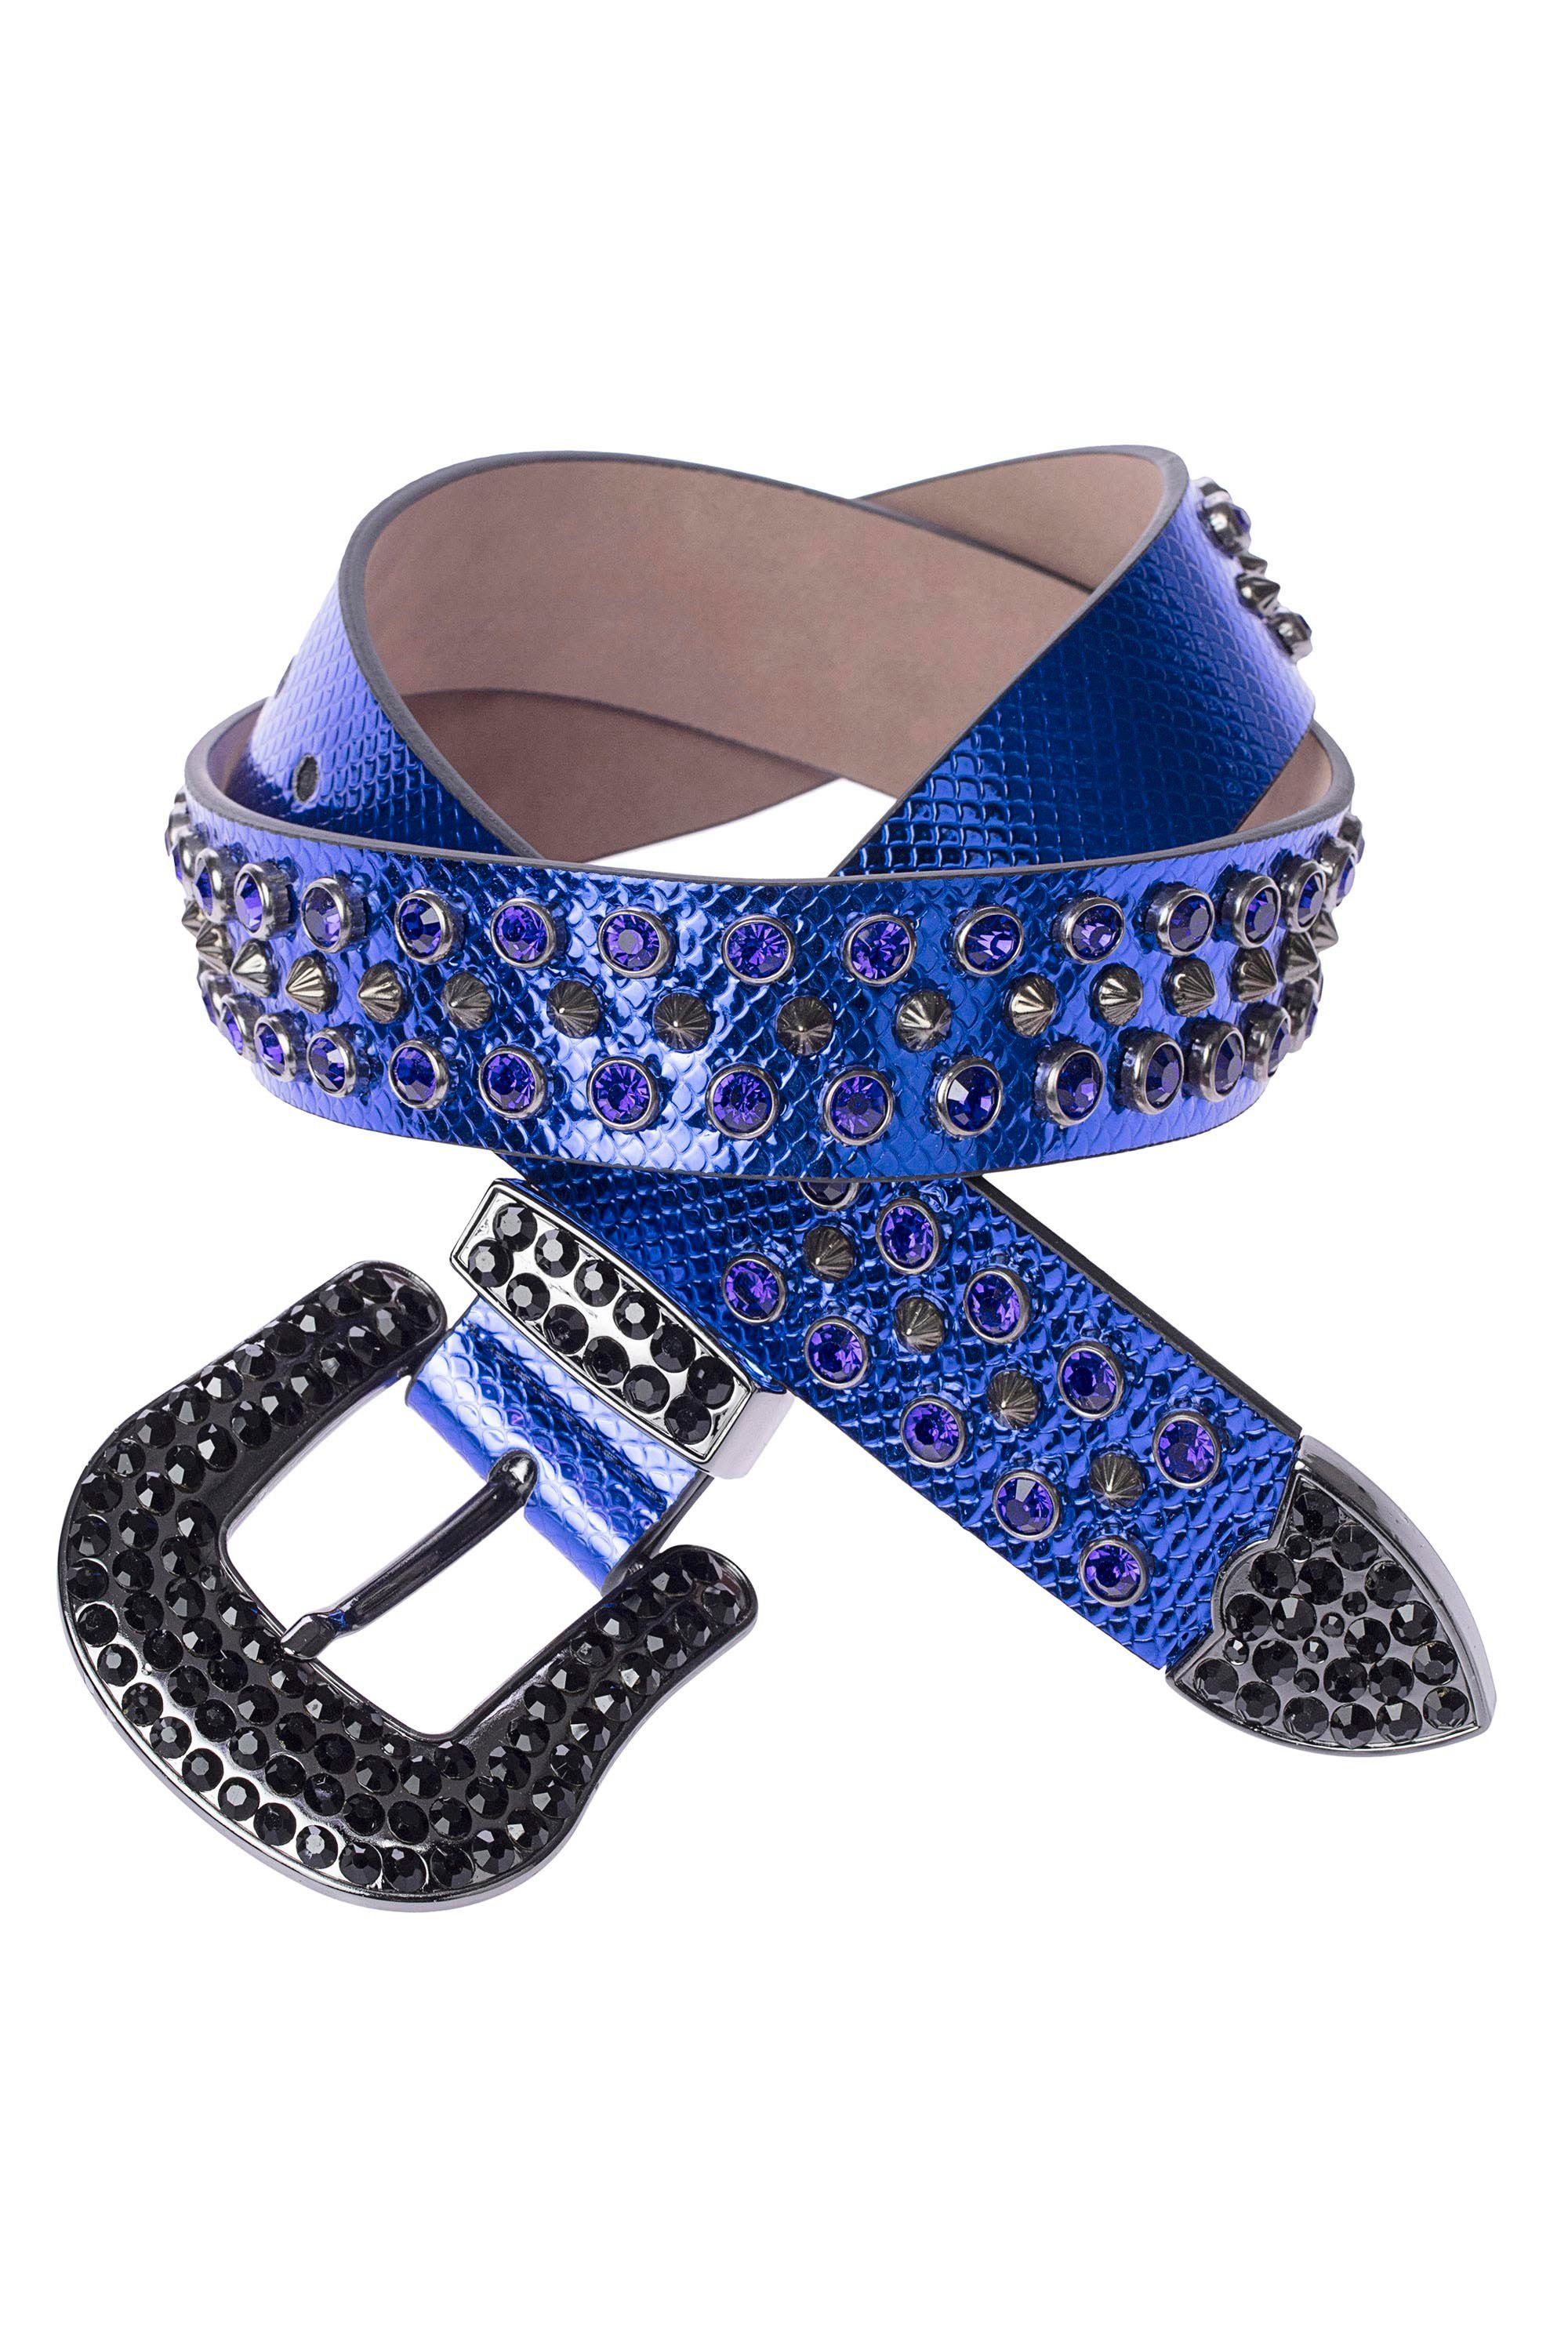 Cipo & blau Glitzersteinchen Baxx mit Ledergürtel trendigen